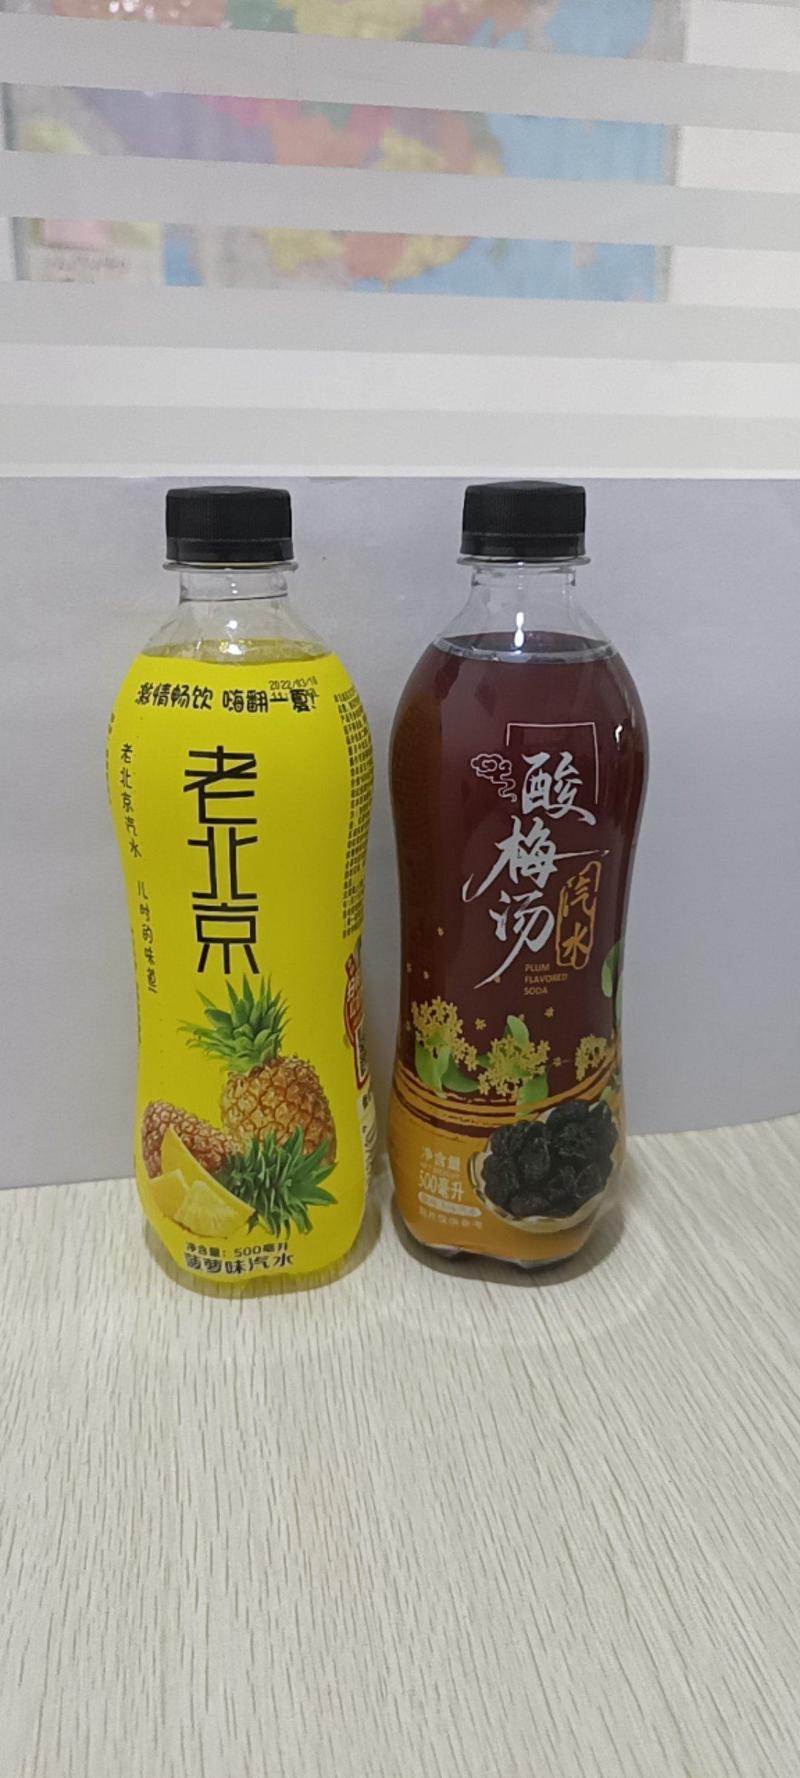 酸梅汤味儿汽水，老北京菠萝味儿汽水，厂家发货，价格便宜